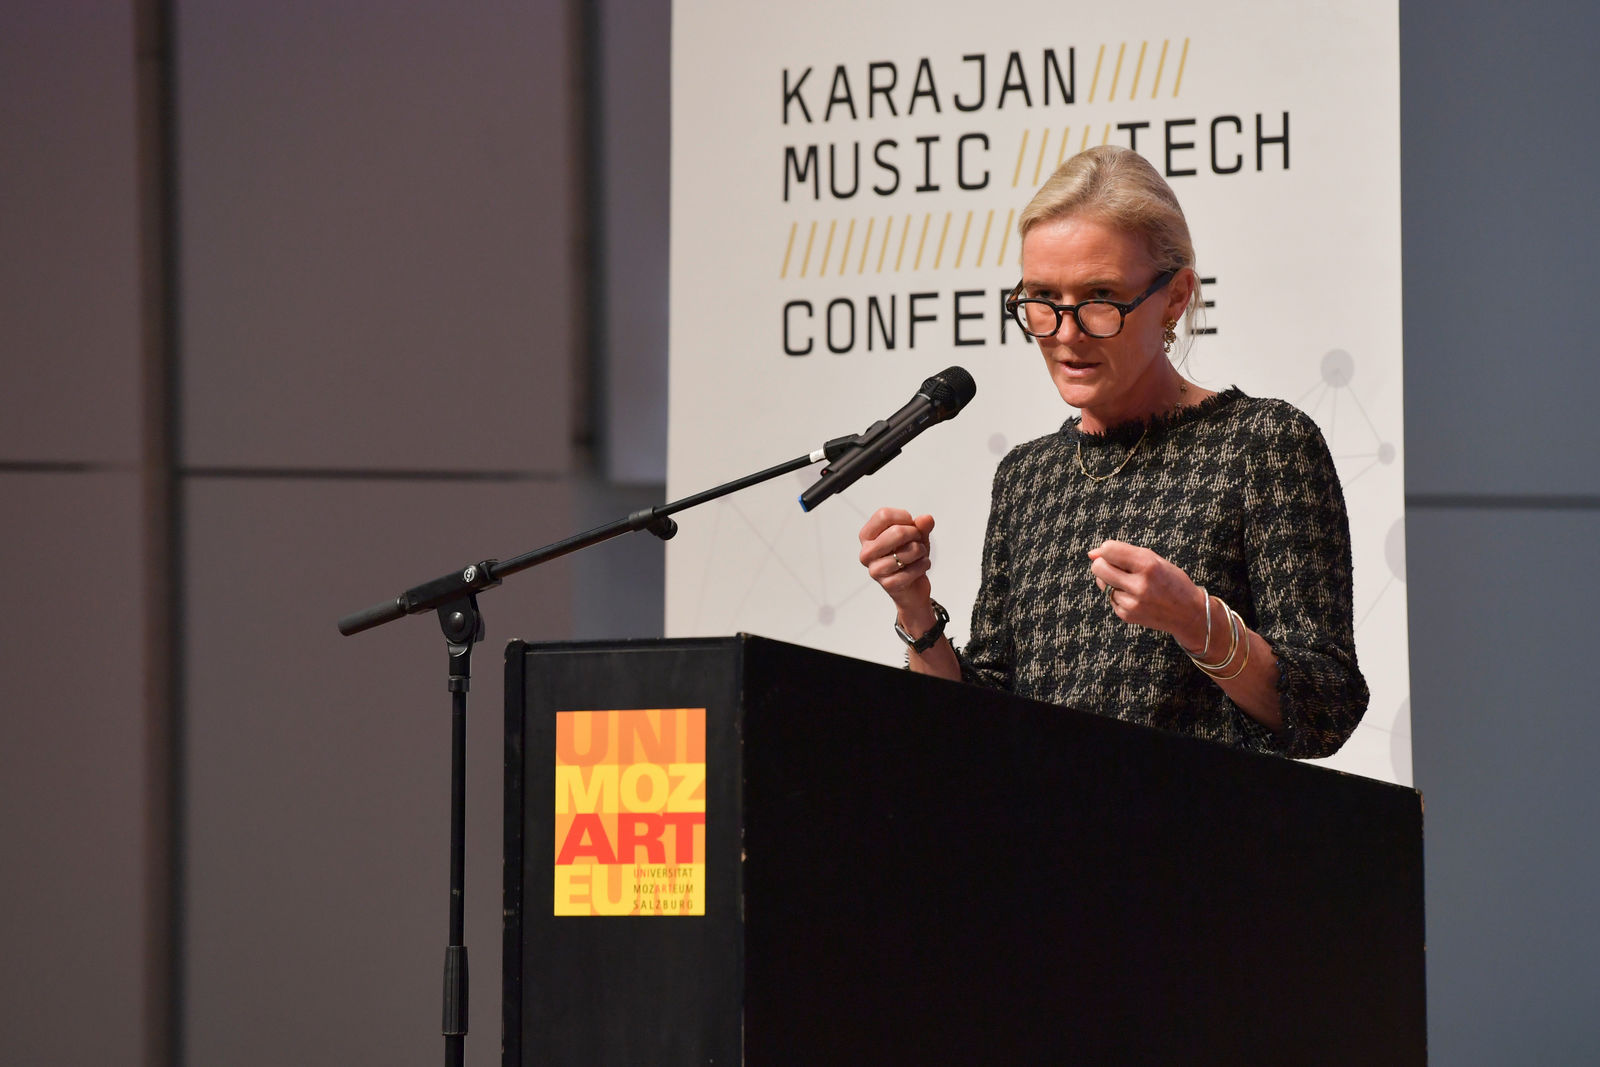 Volkswagen und Karajan Music Tech Conference zeigen dekonstruierte Trompete